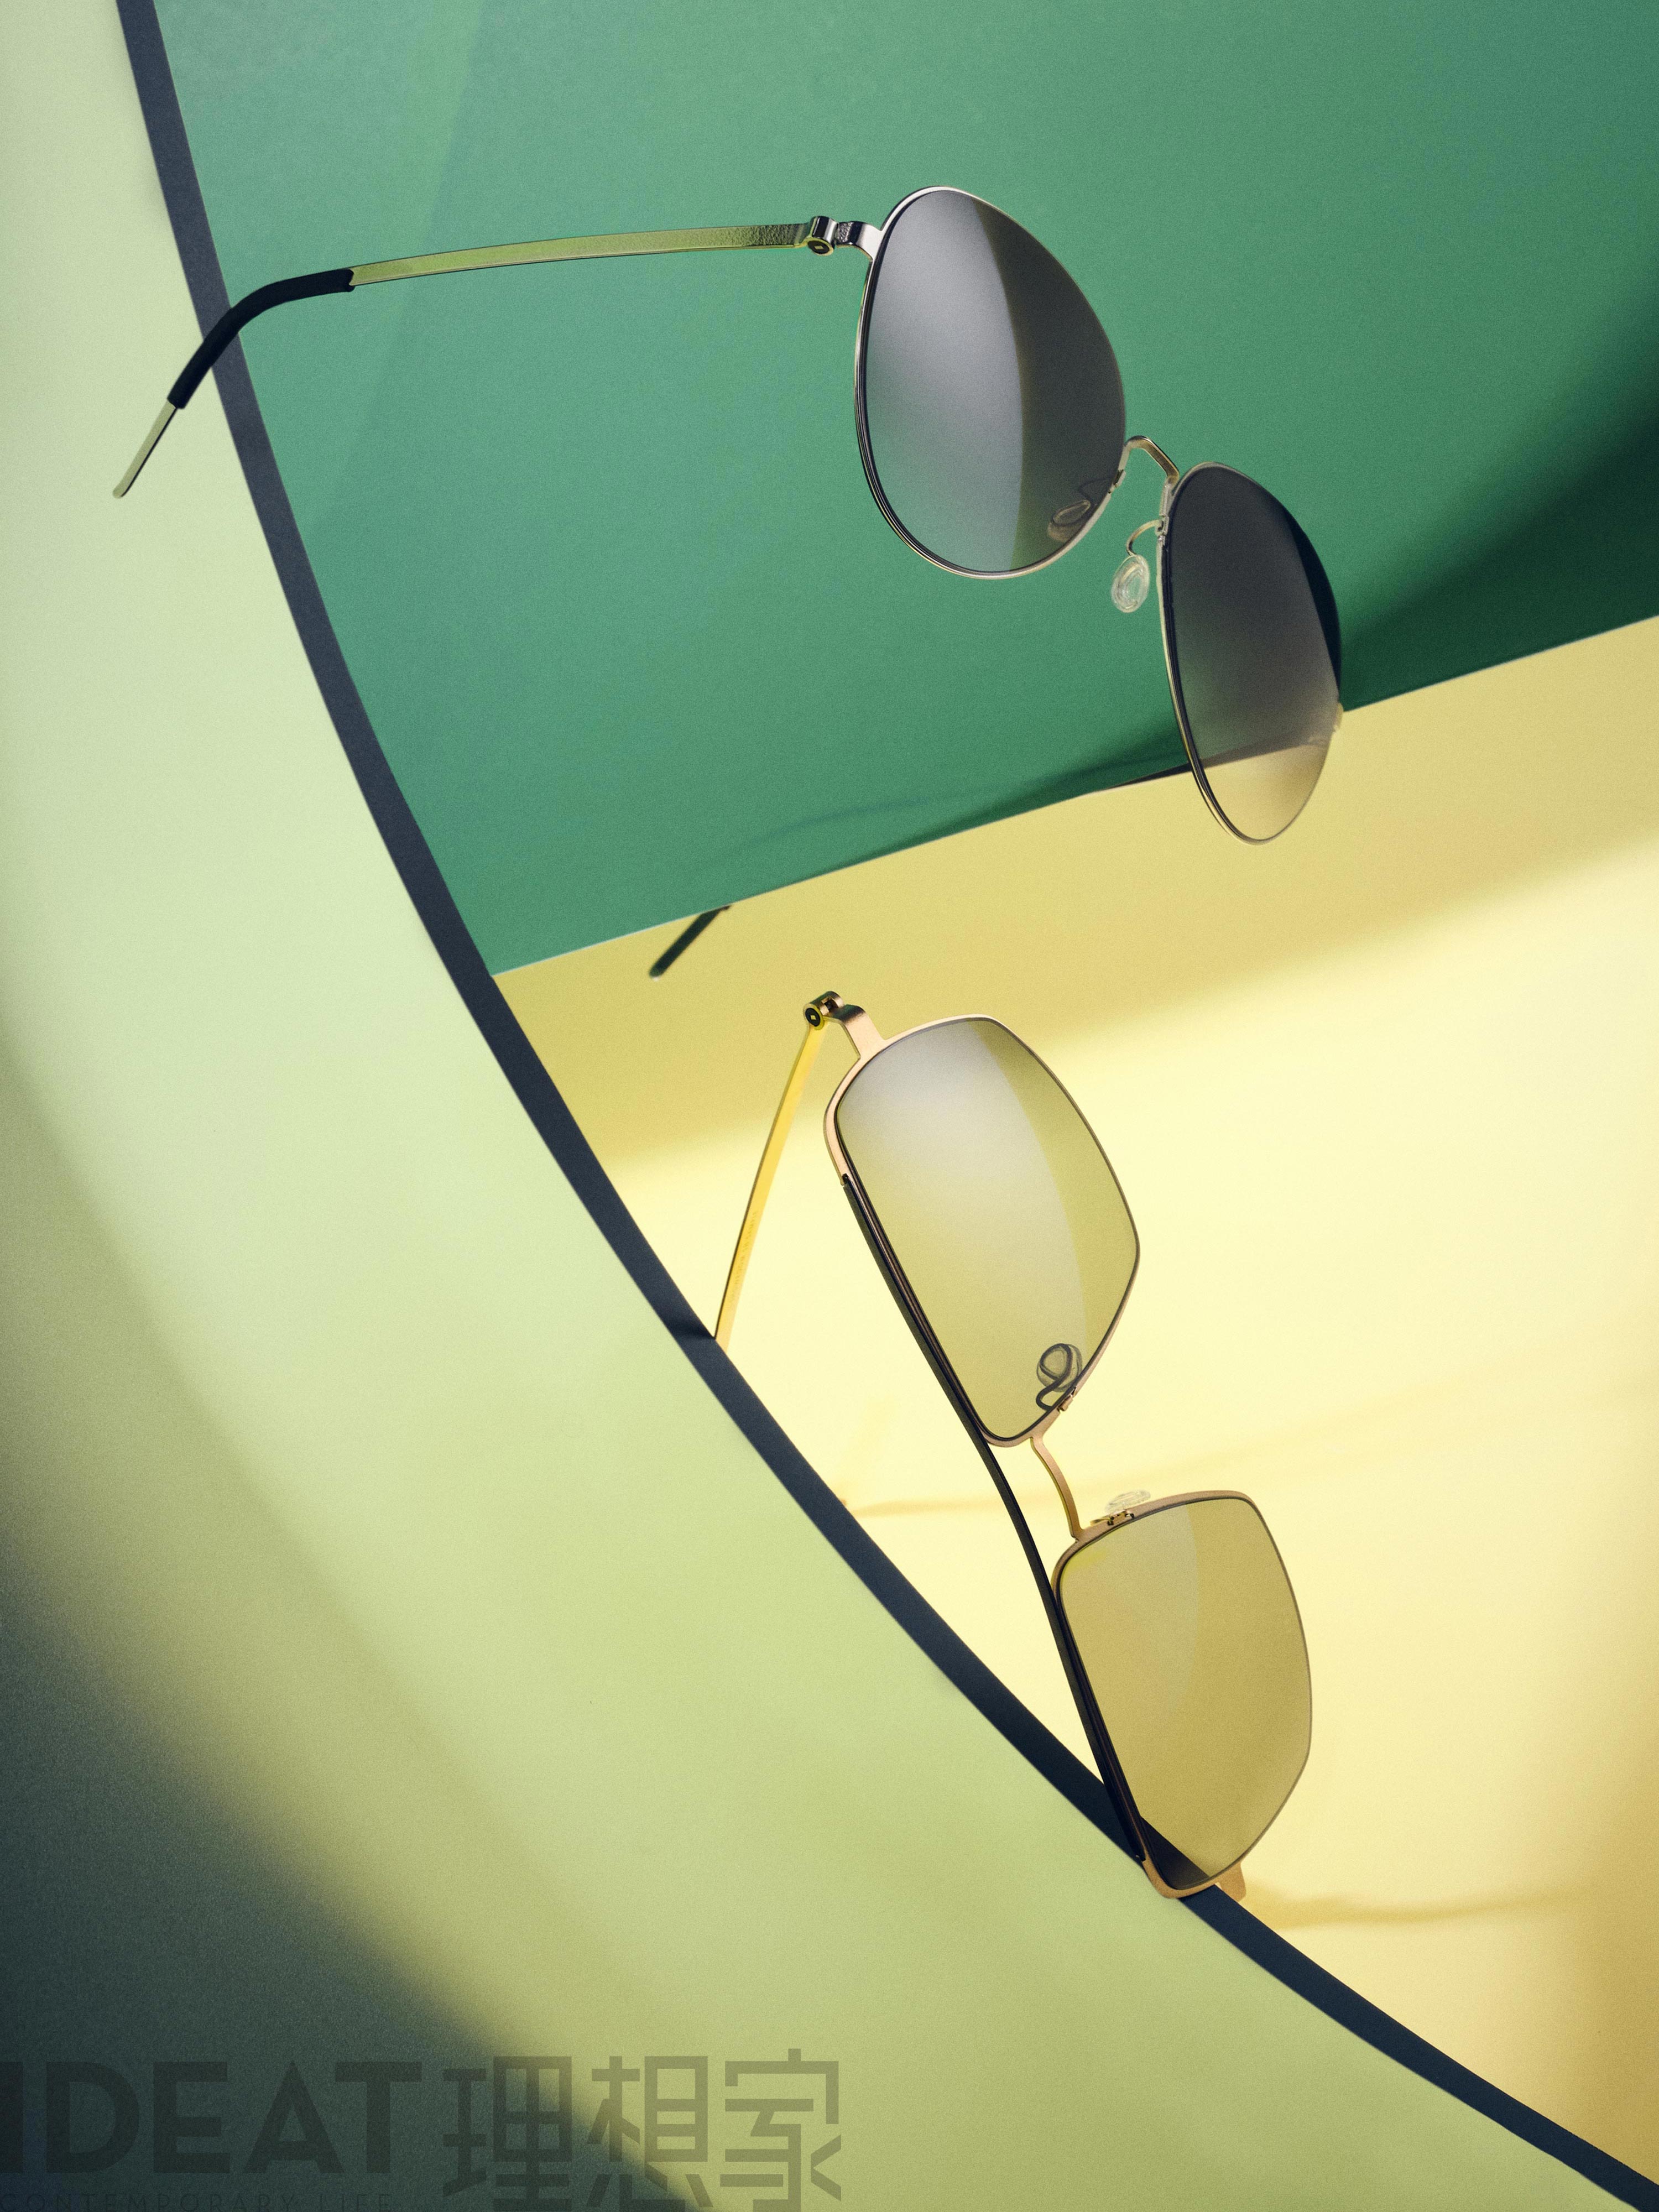 IDEAT-Magazinseite mit LINDBERG-Sonnenbrillen aus Titan, Modelle 8908 und 8909